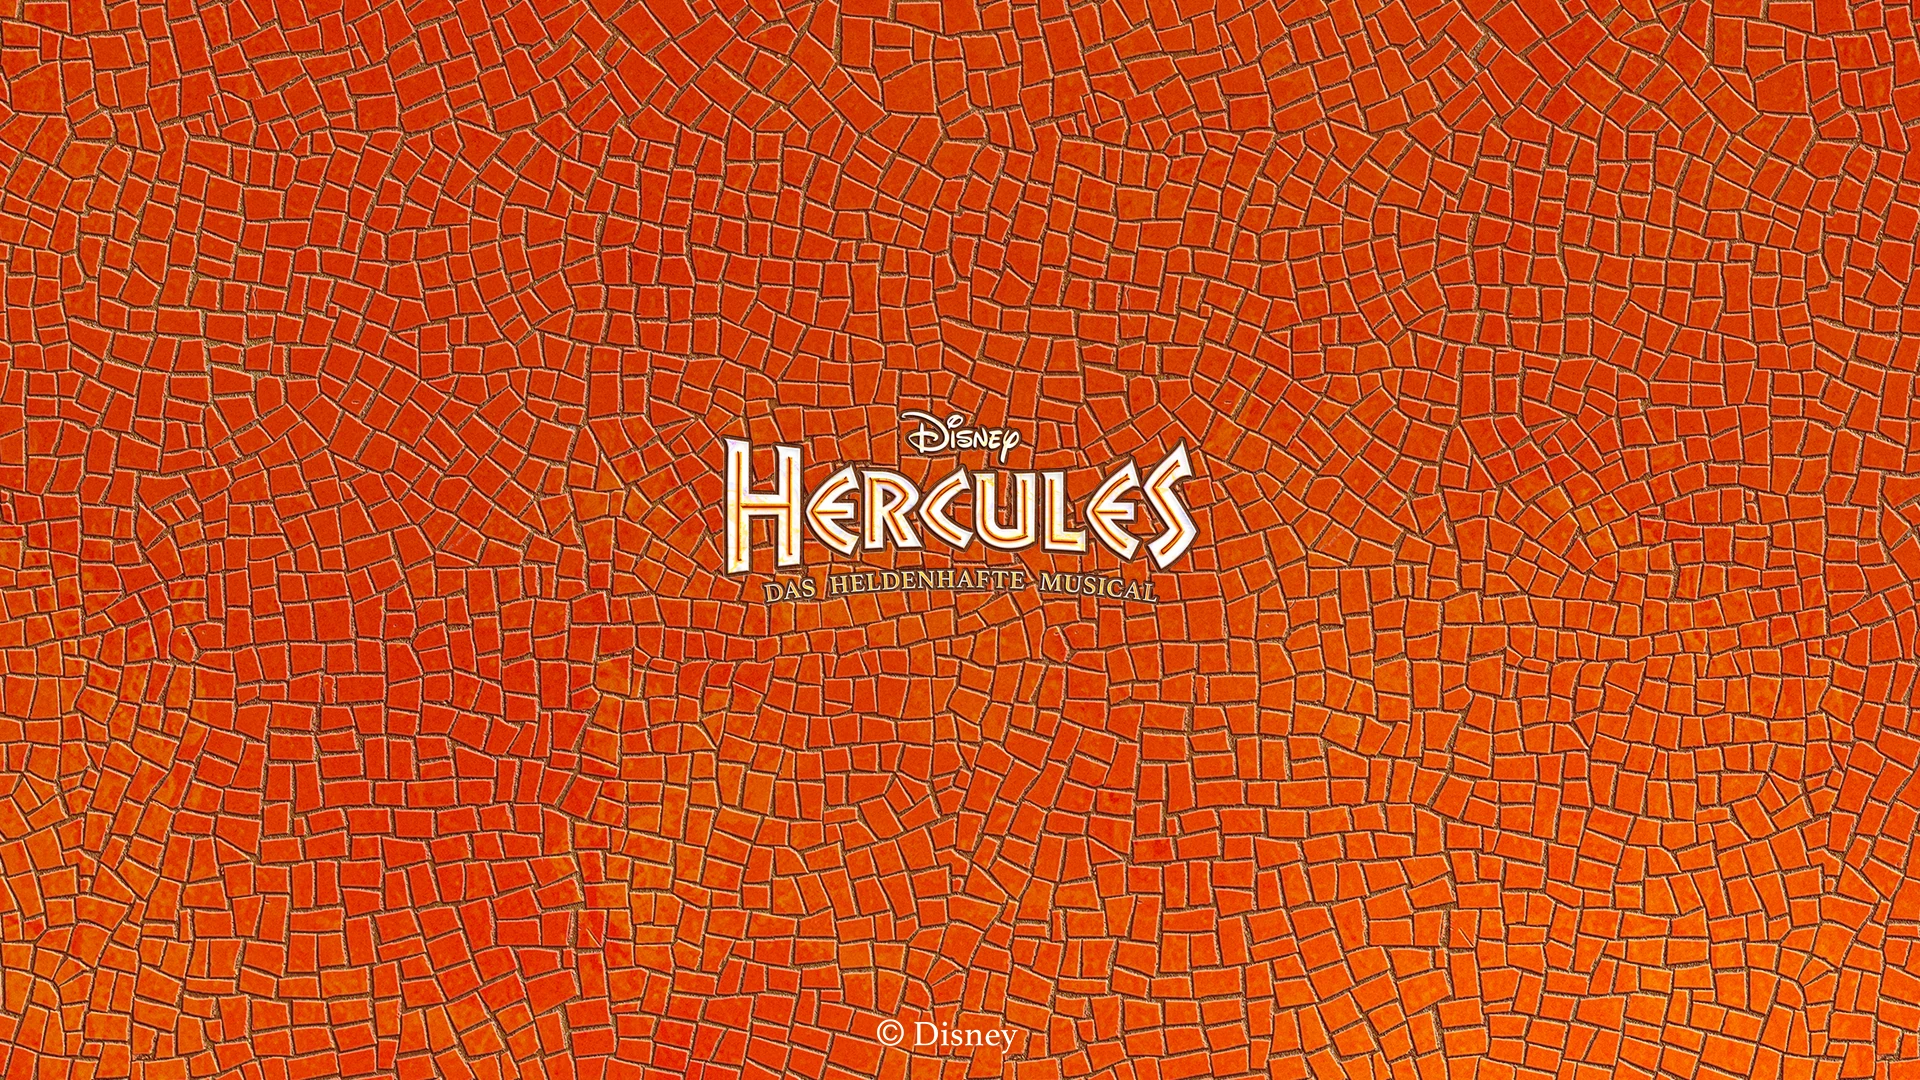 Disney HERCULES - Das heldenhafte Musical (Logo nur Schrift auf Mosaik)